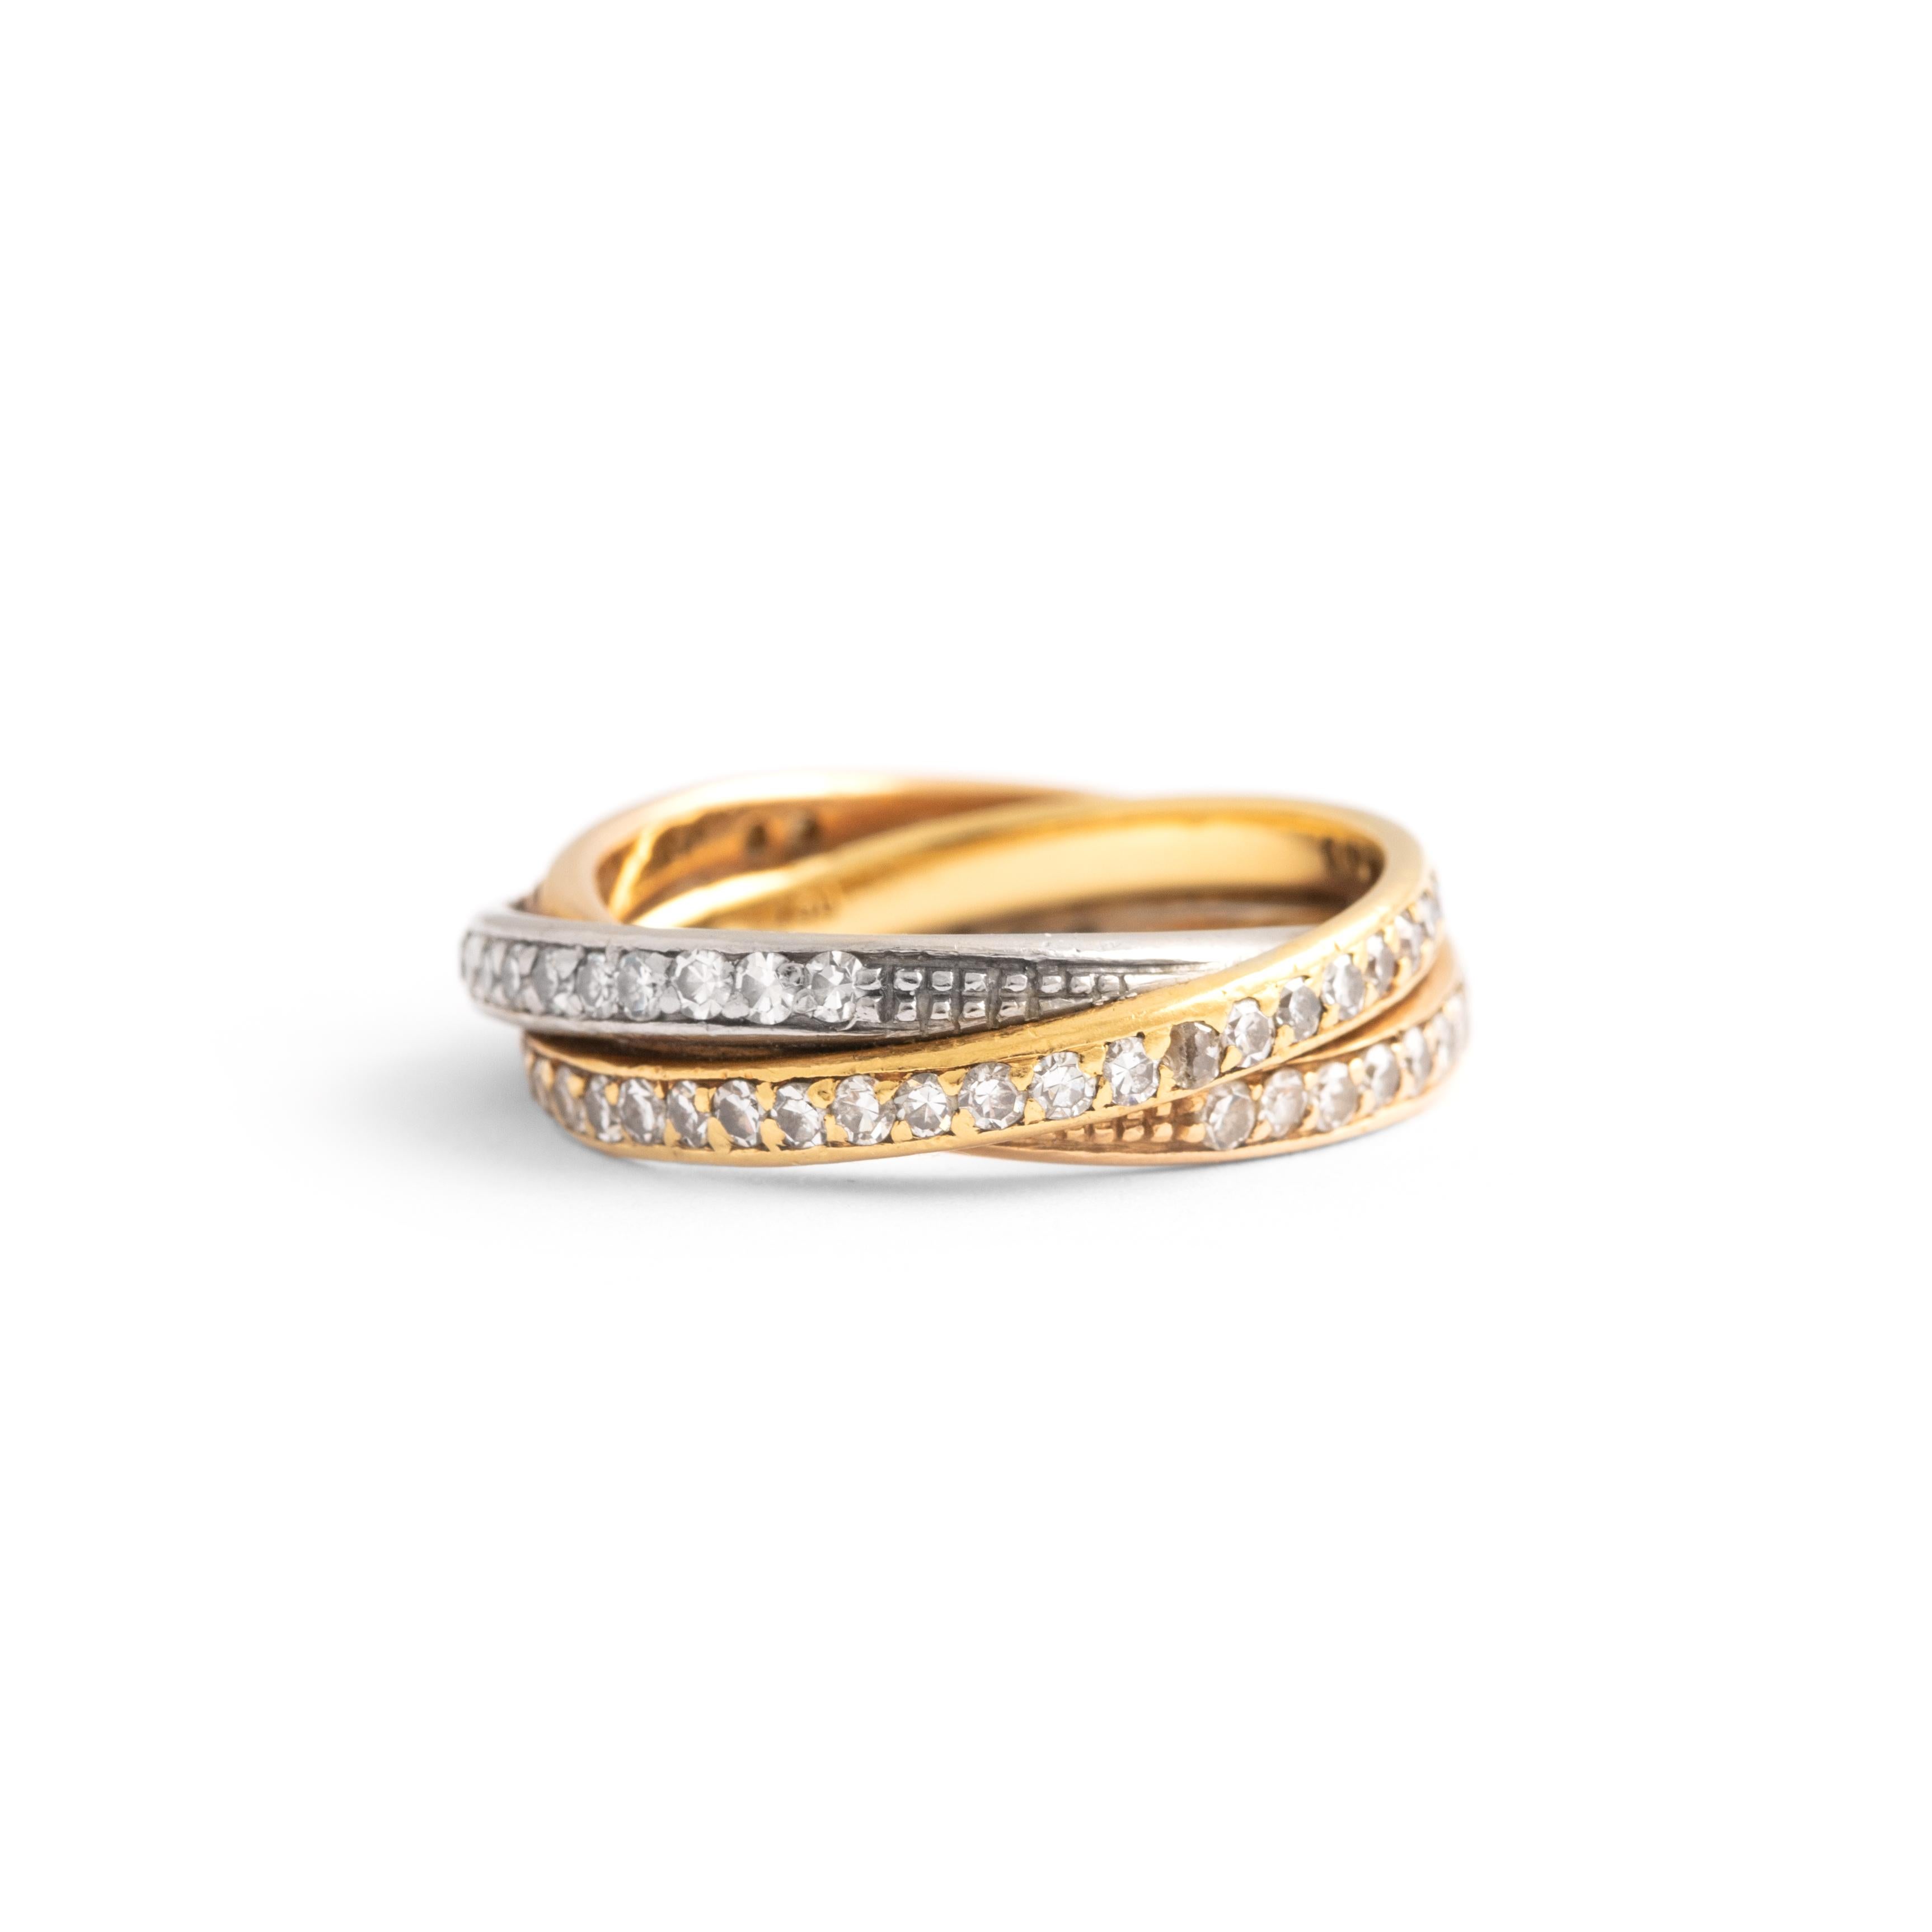 Ring aus Diamant und Gelbgold 18K.
Größe 50 (5 1/2 US).
Bruttogewicht: 6,89 Gramm.